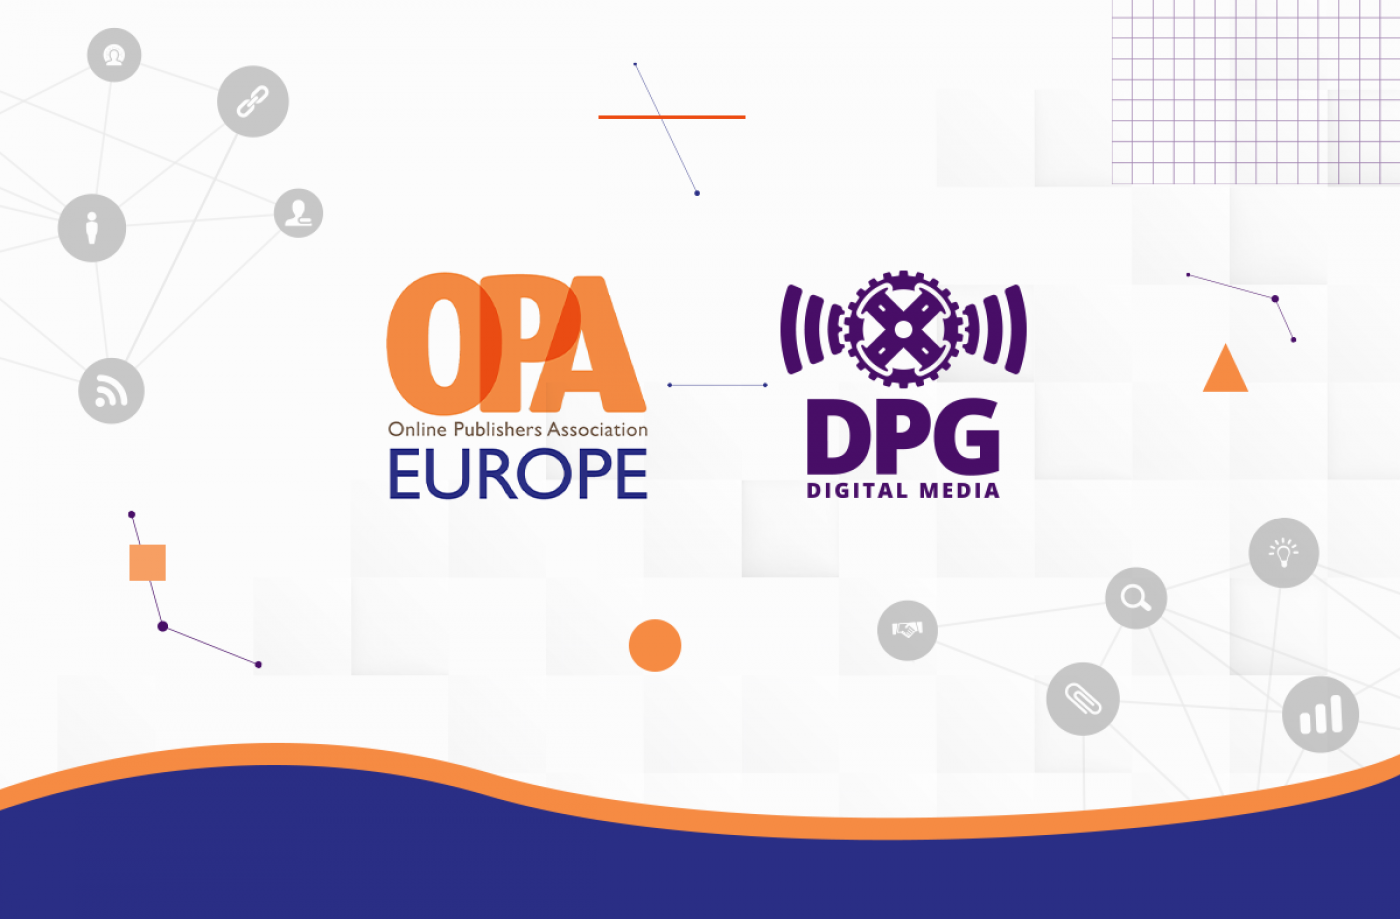 Η DPG Digital Media μέλος της OPA Europe